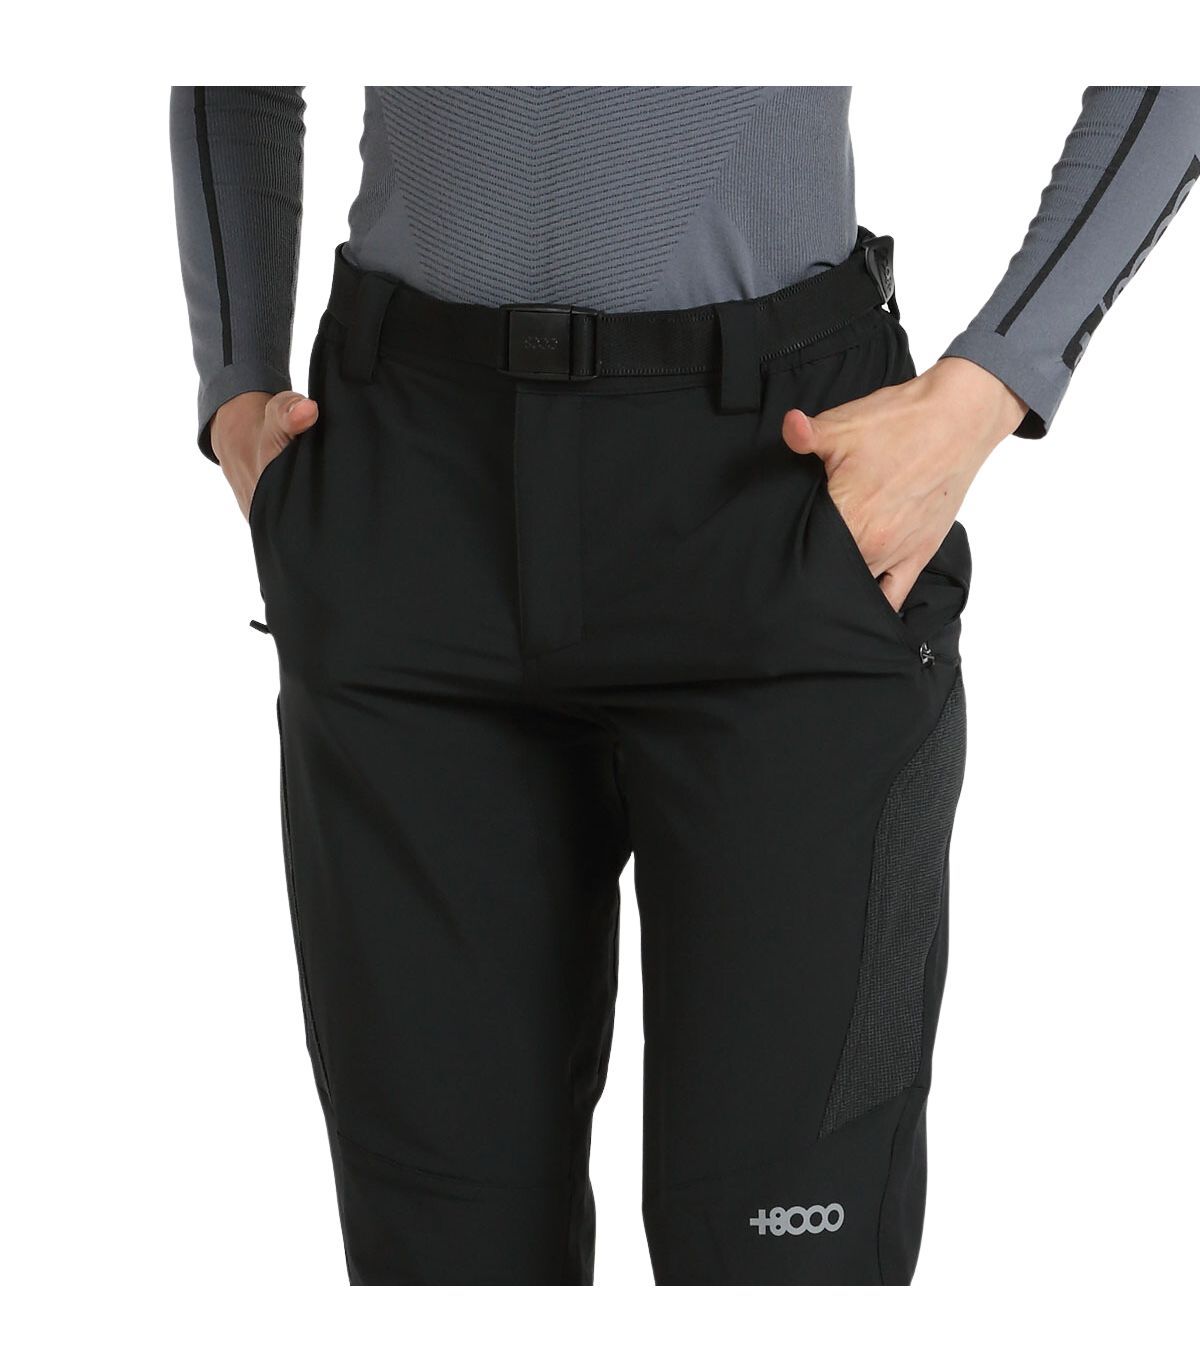 Pantalones elásticos con diferentes ajustes, comprar online